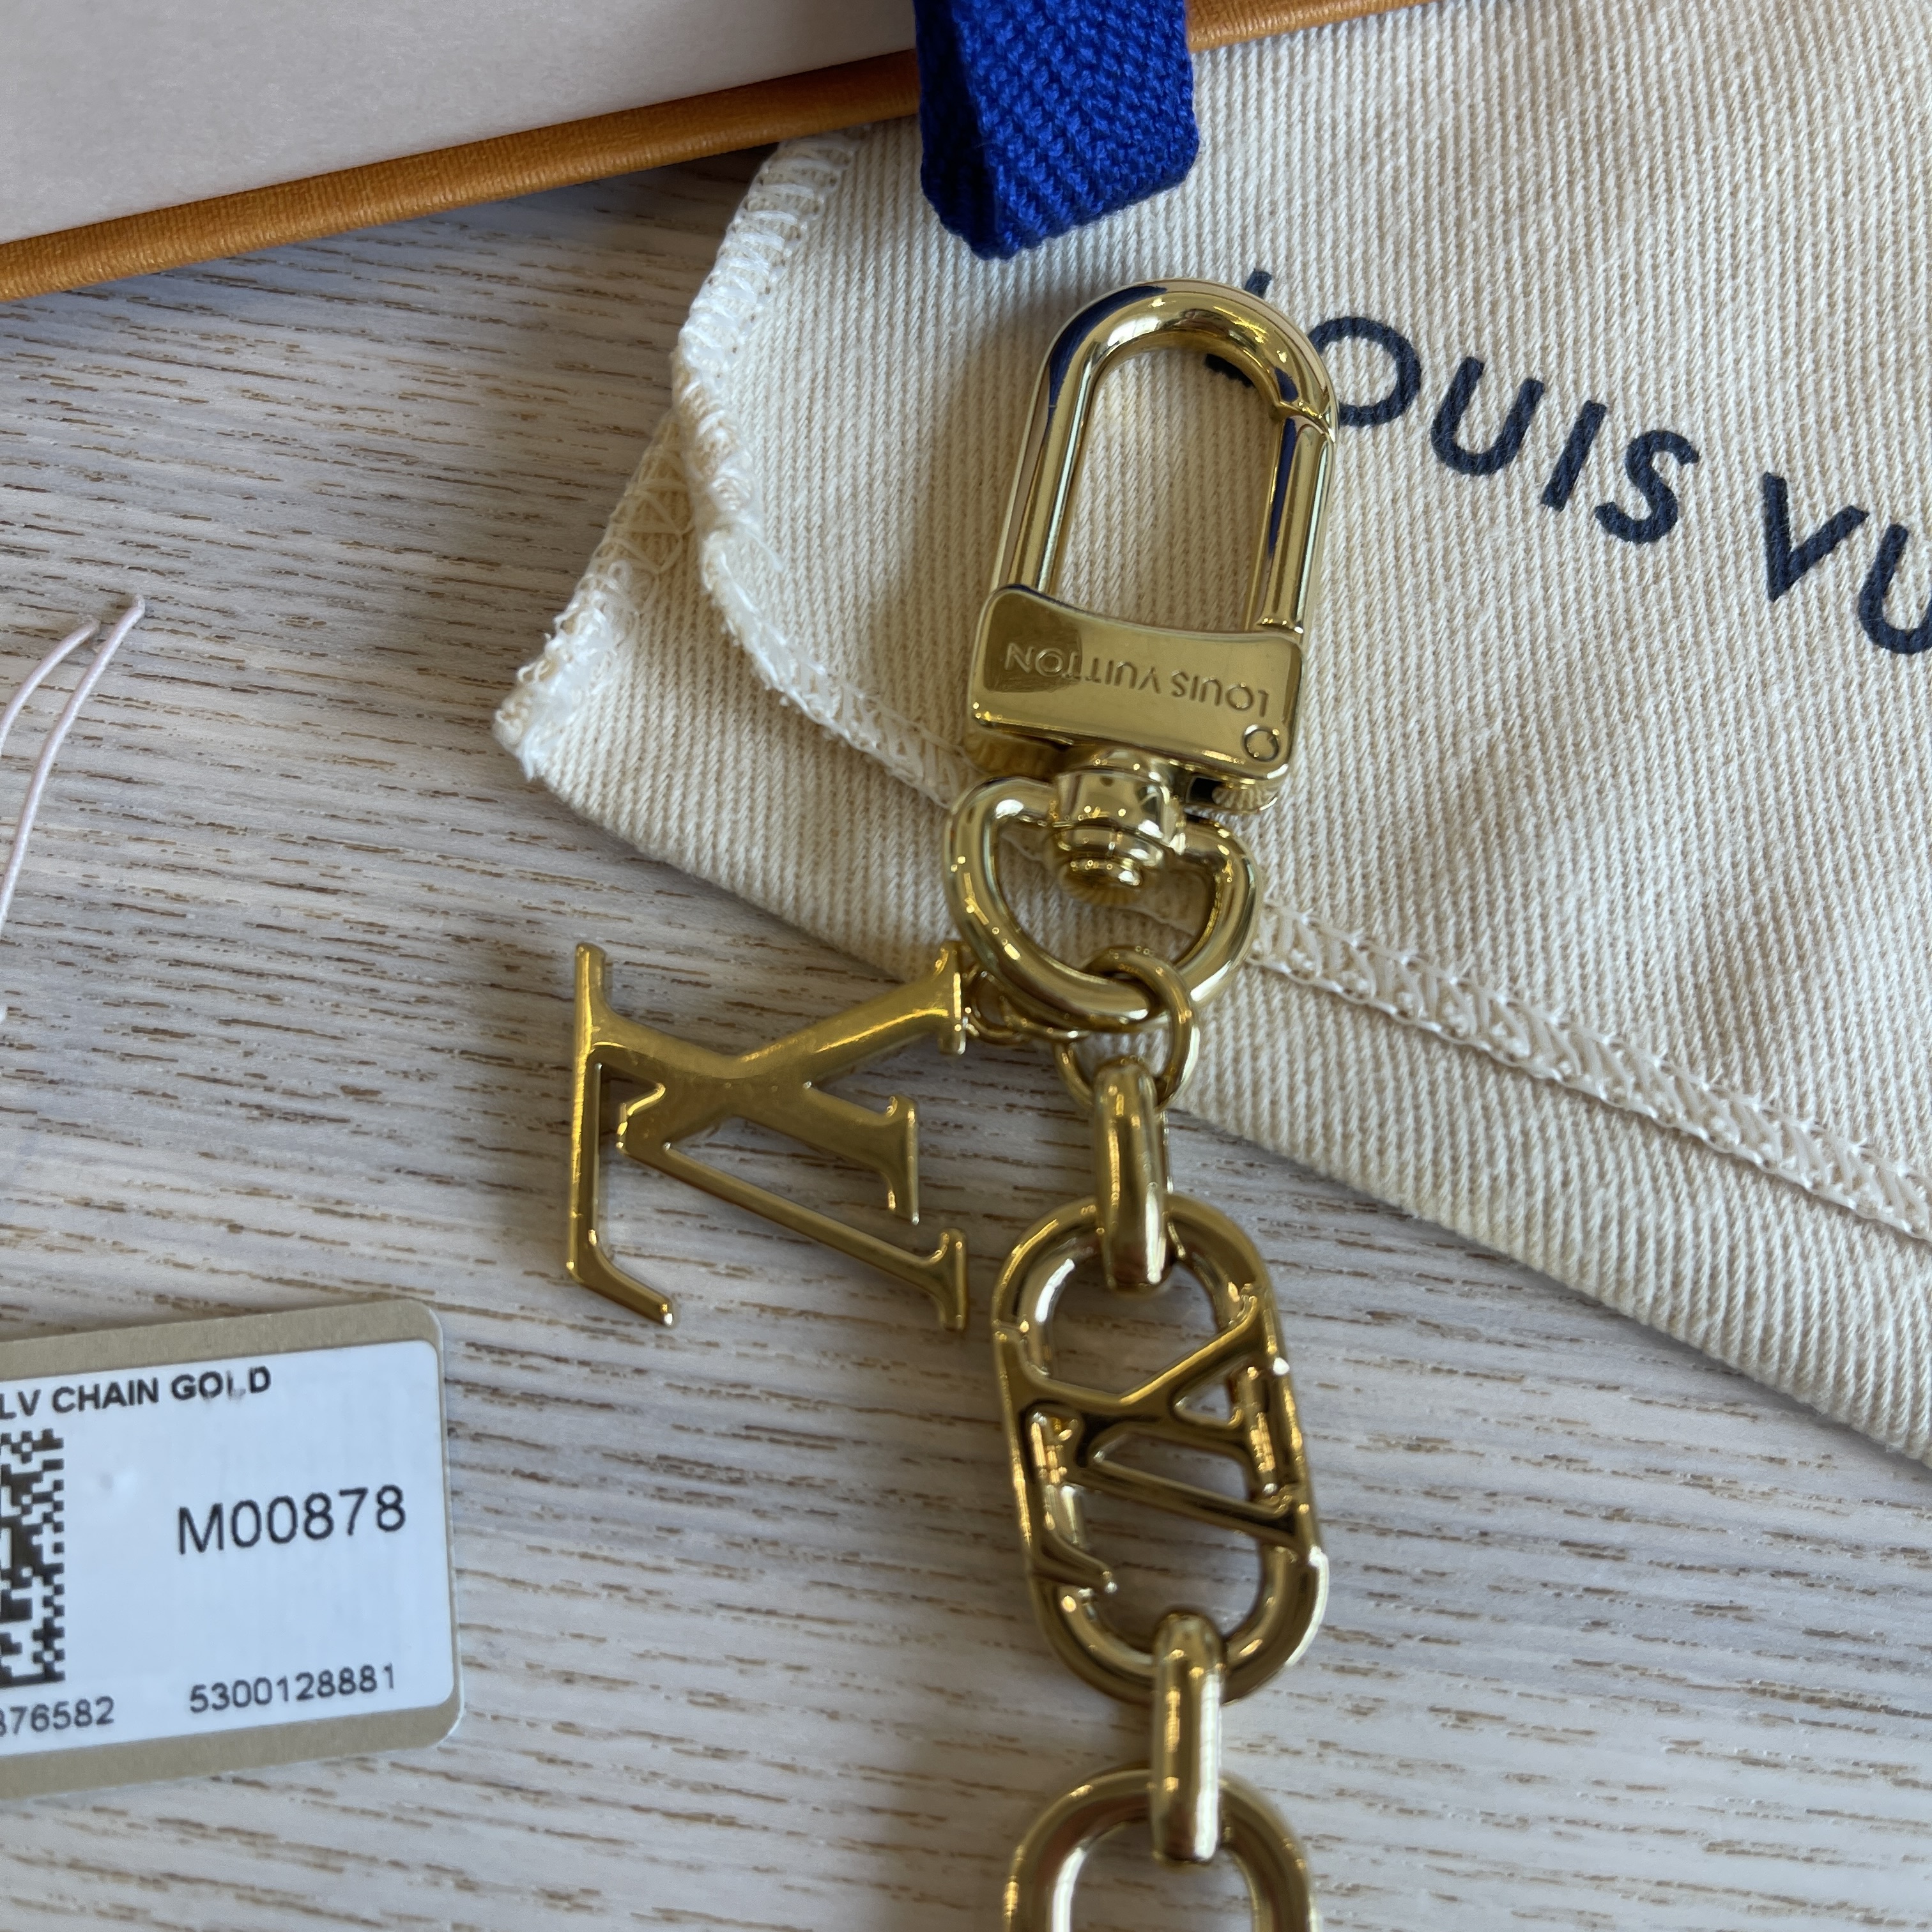 Louis Vuitton My LV Chain Bag Charm Gold